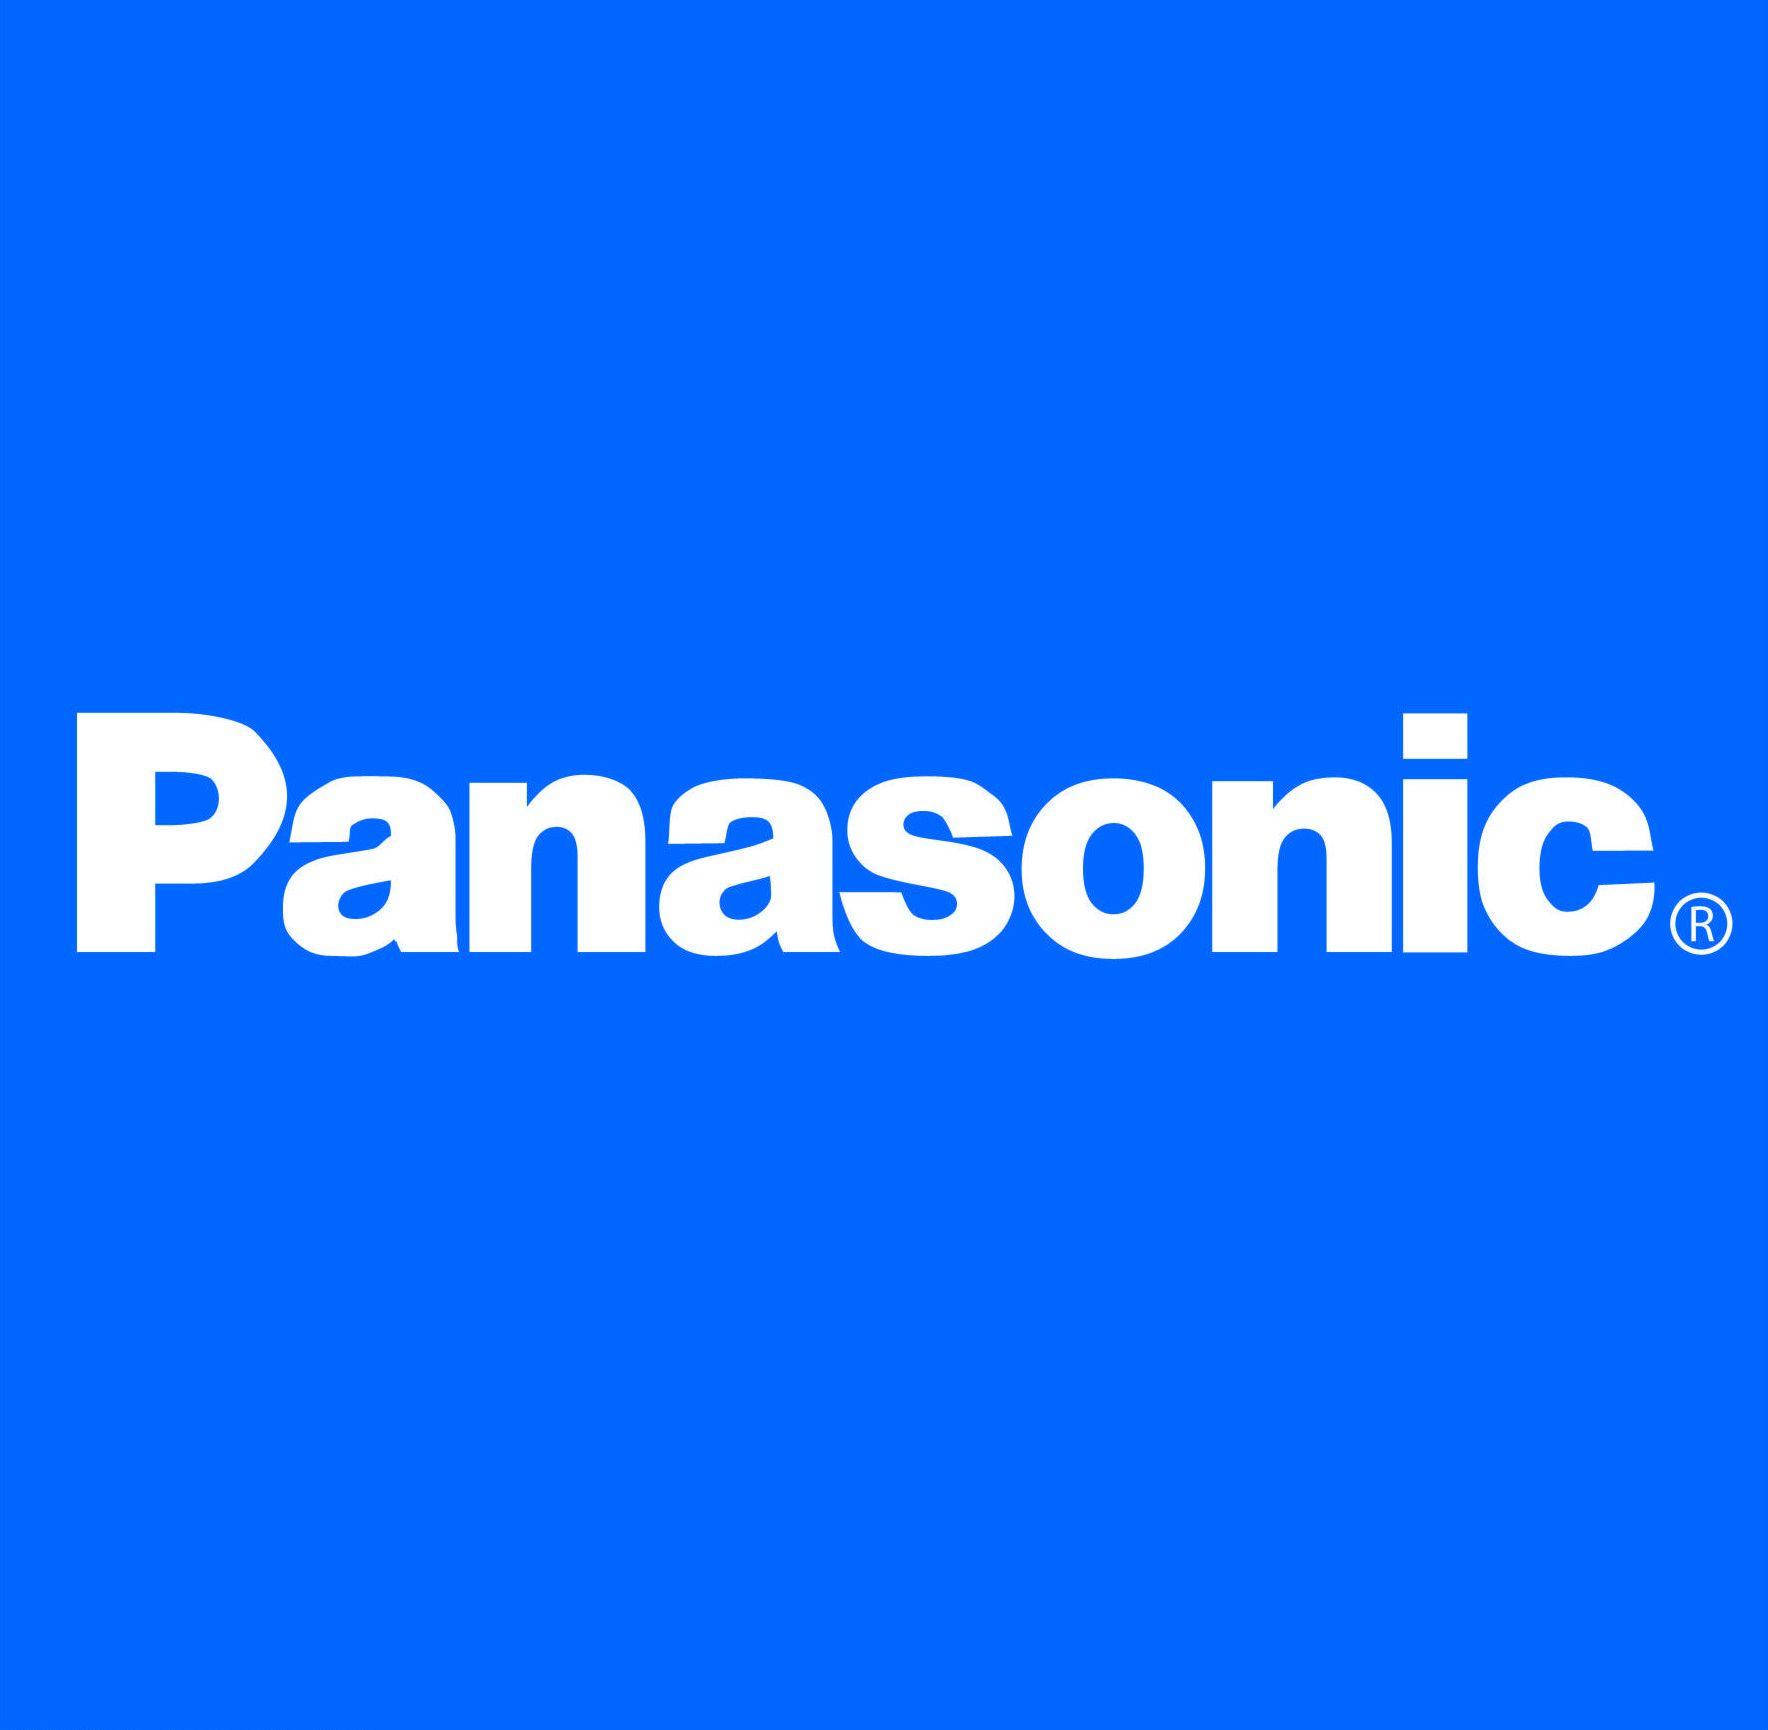 Panasonic Blue Background